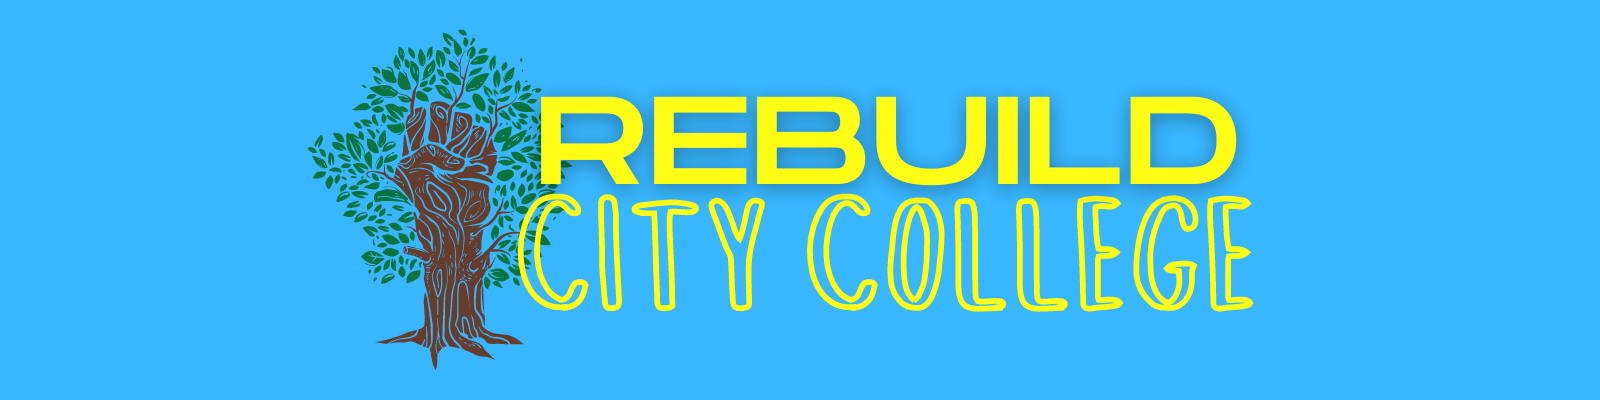 Rebuild City College Campaign